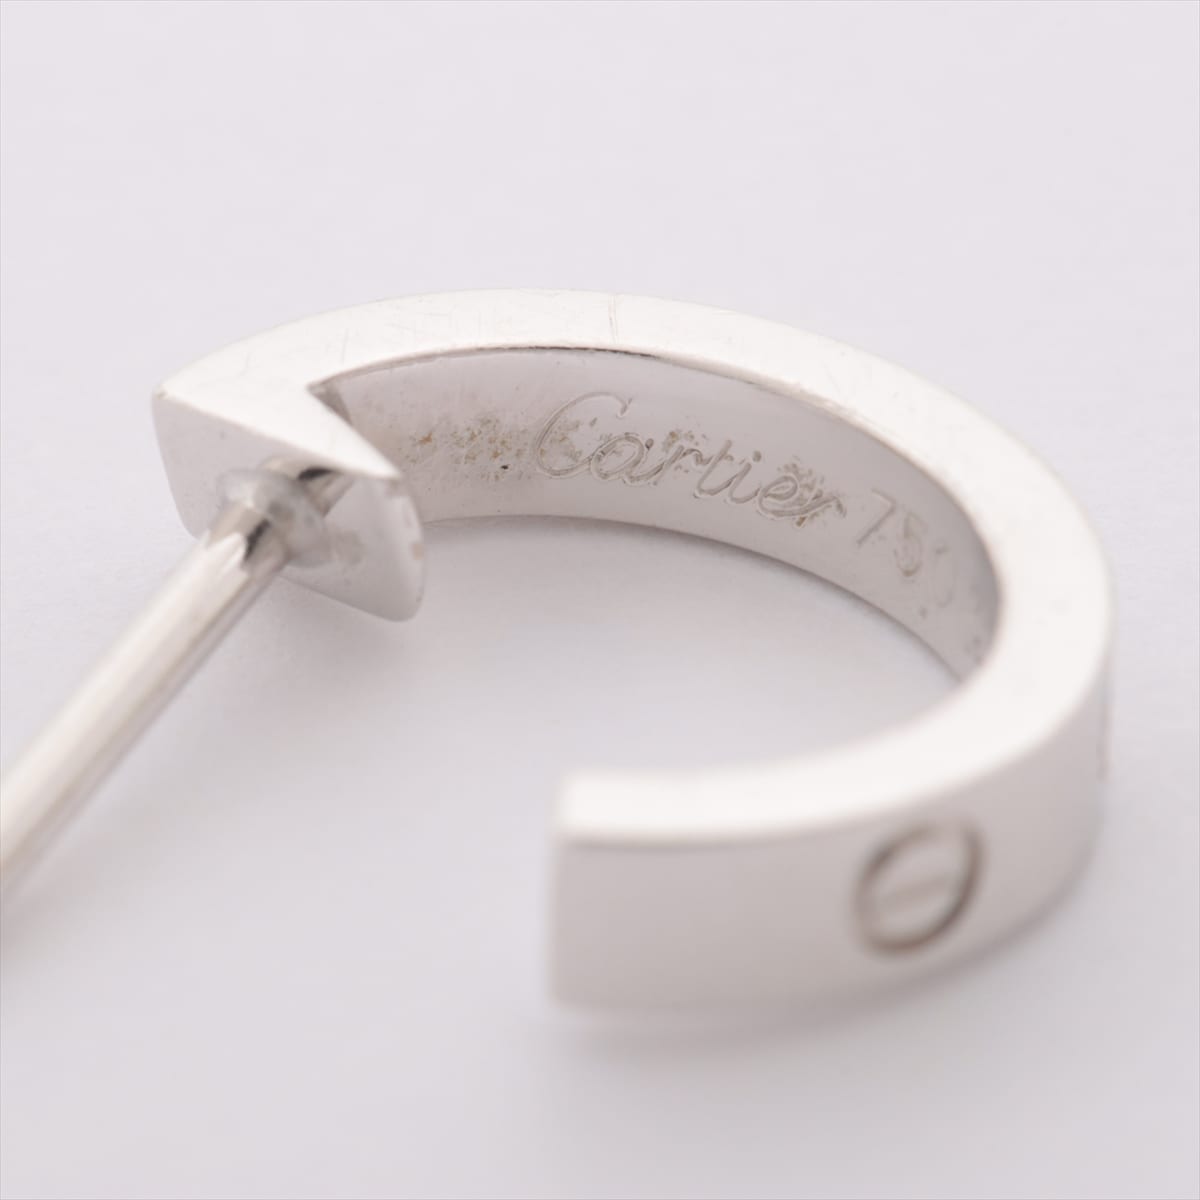 Cartier Mini Love Piercing jewelry 750(WG) 3.8g